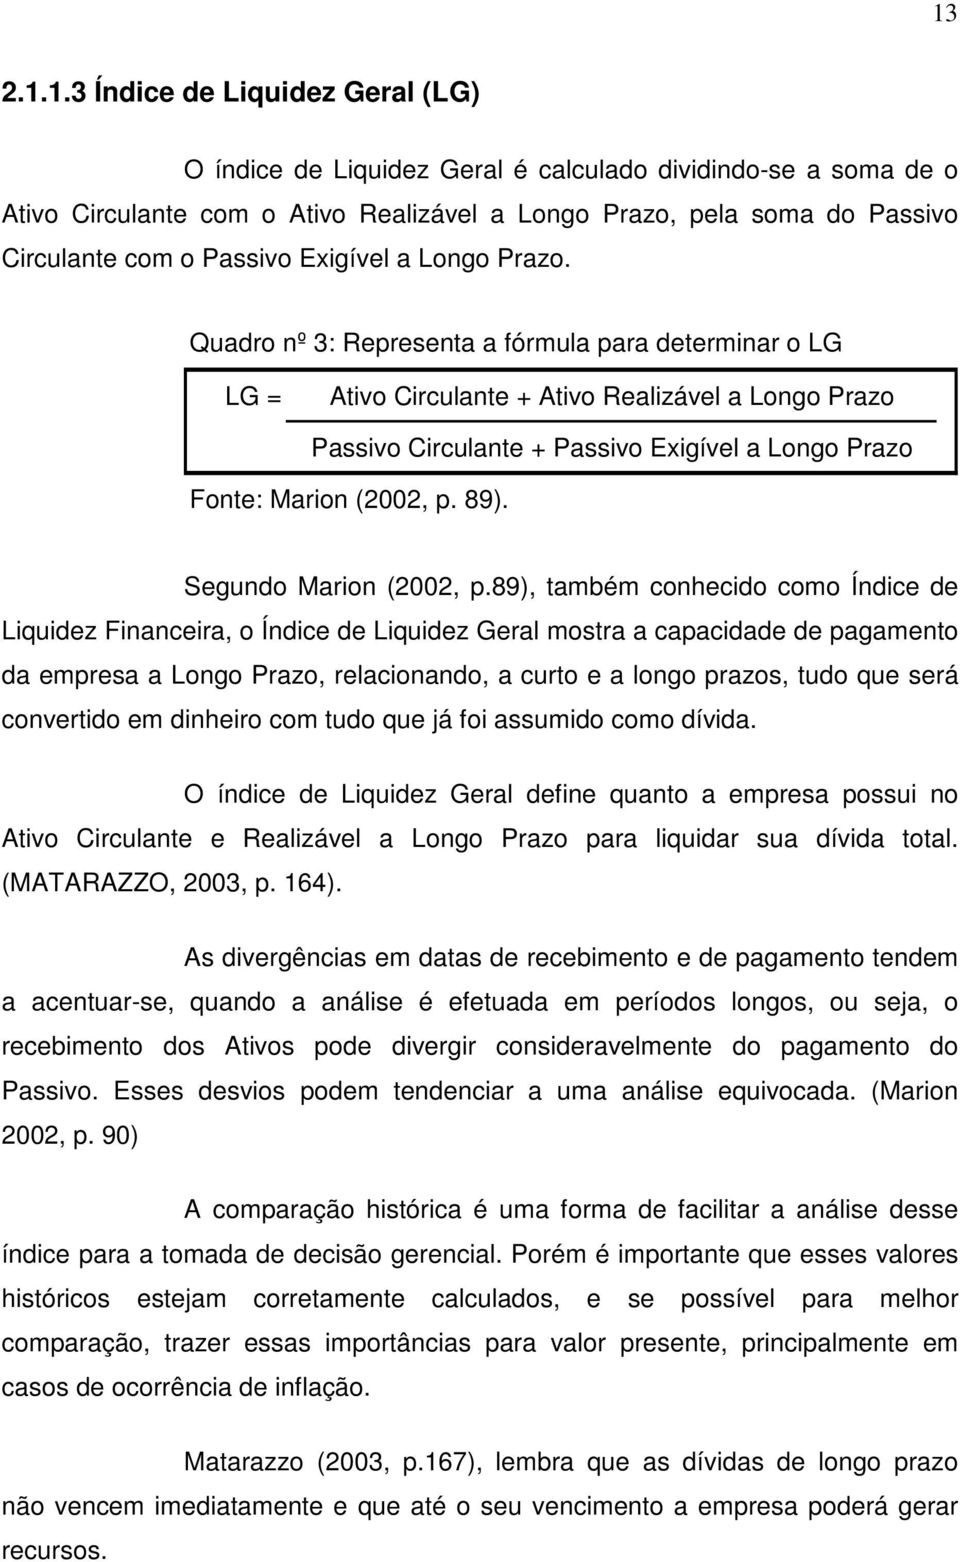 Quadro nº 3: Representa a fórmula para determinar o LG LG = Ativo Circulante + Ativo Realizável a Longo Prazo Passivo Circulante + Passivo Exigível a Longo Prazo Fonte: Marion (2002, p. 89).